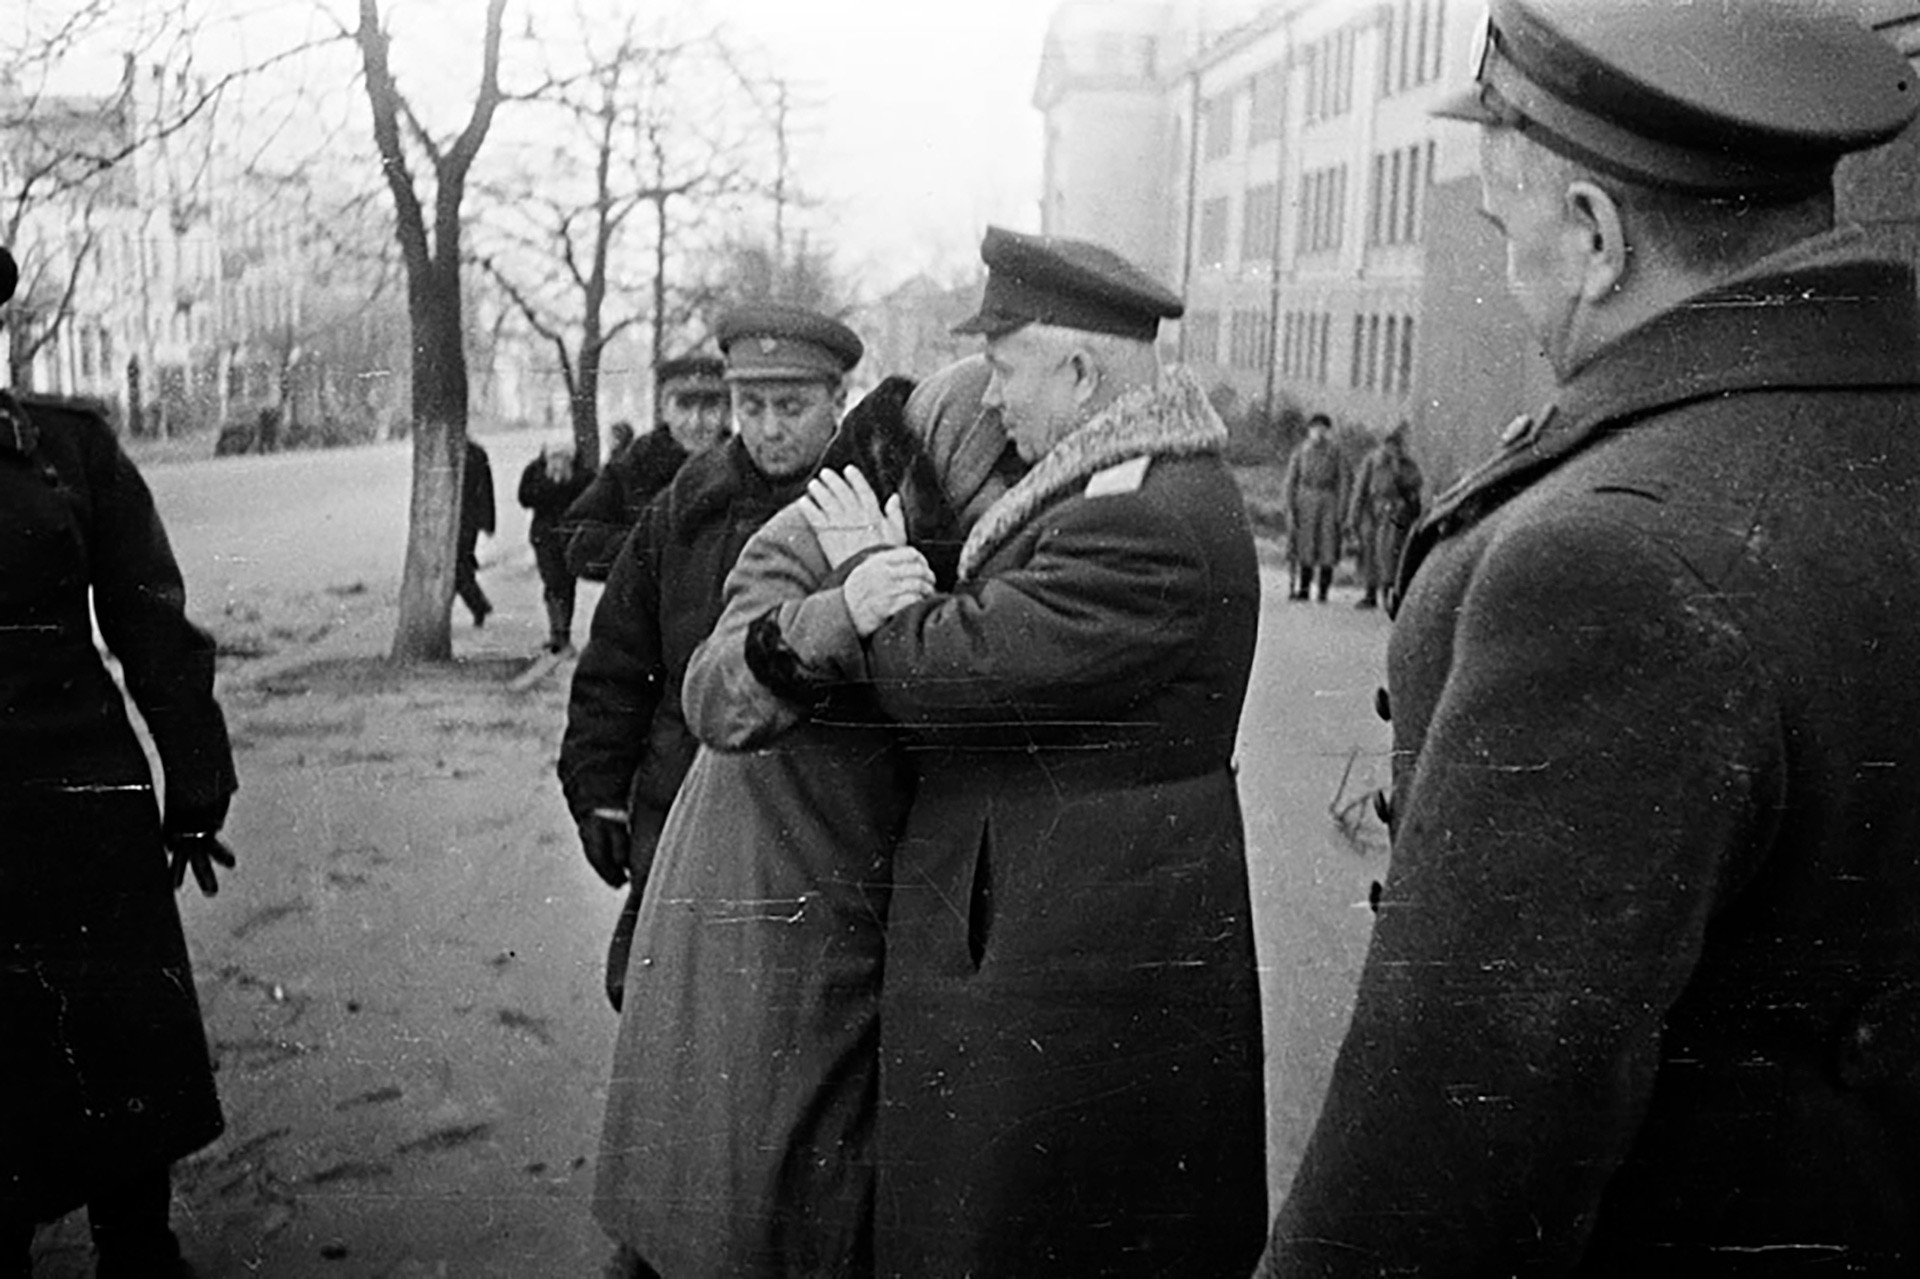 Während des Großen Vaterländischen Krieges war Nikita Chruschtschjow noch Erster Sekretär der Kommunistischen Partei der Ukrainischen Sowjetrepublik. Das Bild zeigt, wie ihn und Marschall Georgij Schukow (rechts) die Einwohner des befreiten Kiews willkommenheißen. November 1943